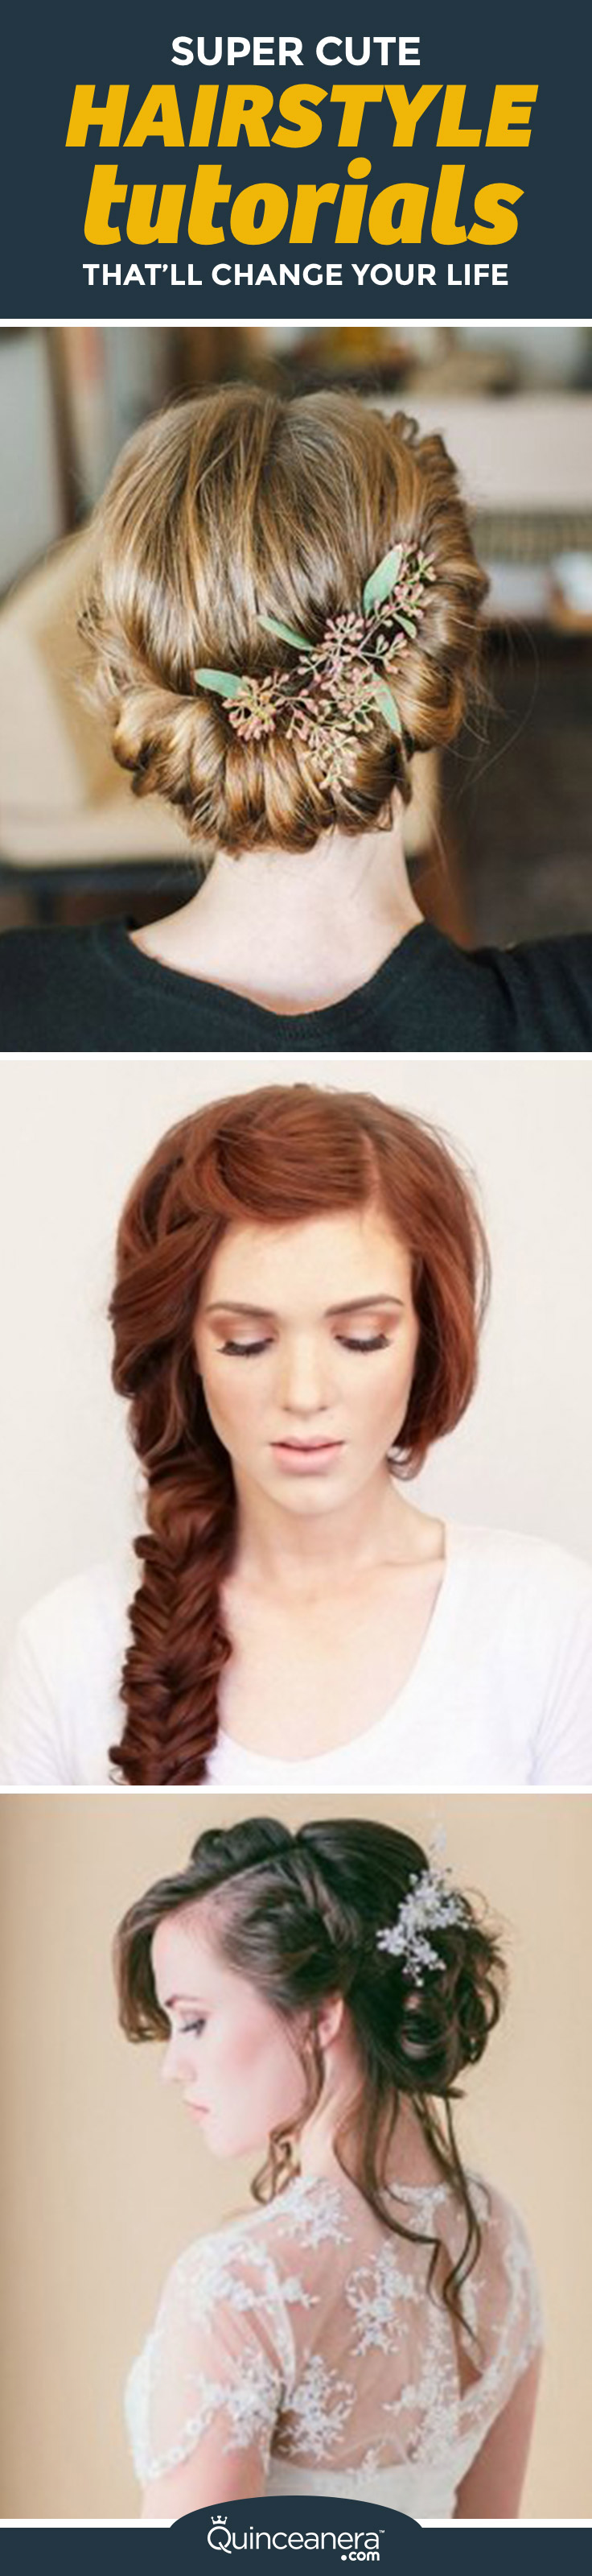 hairstyle-tutorials